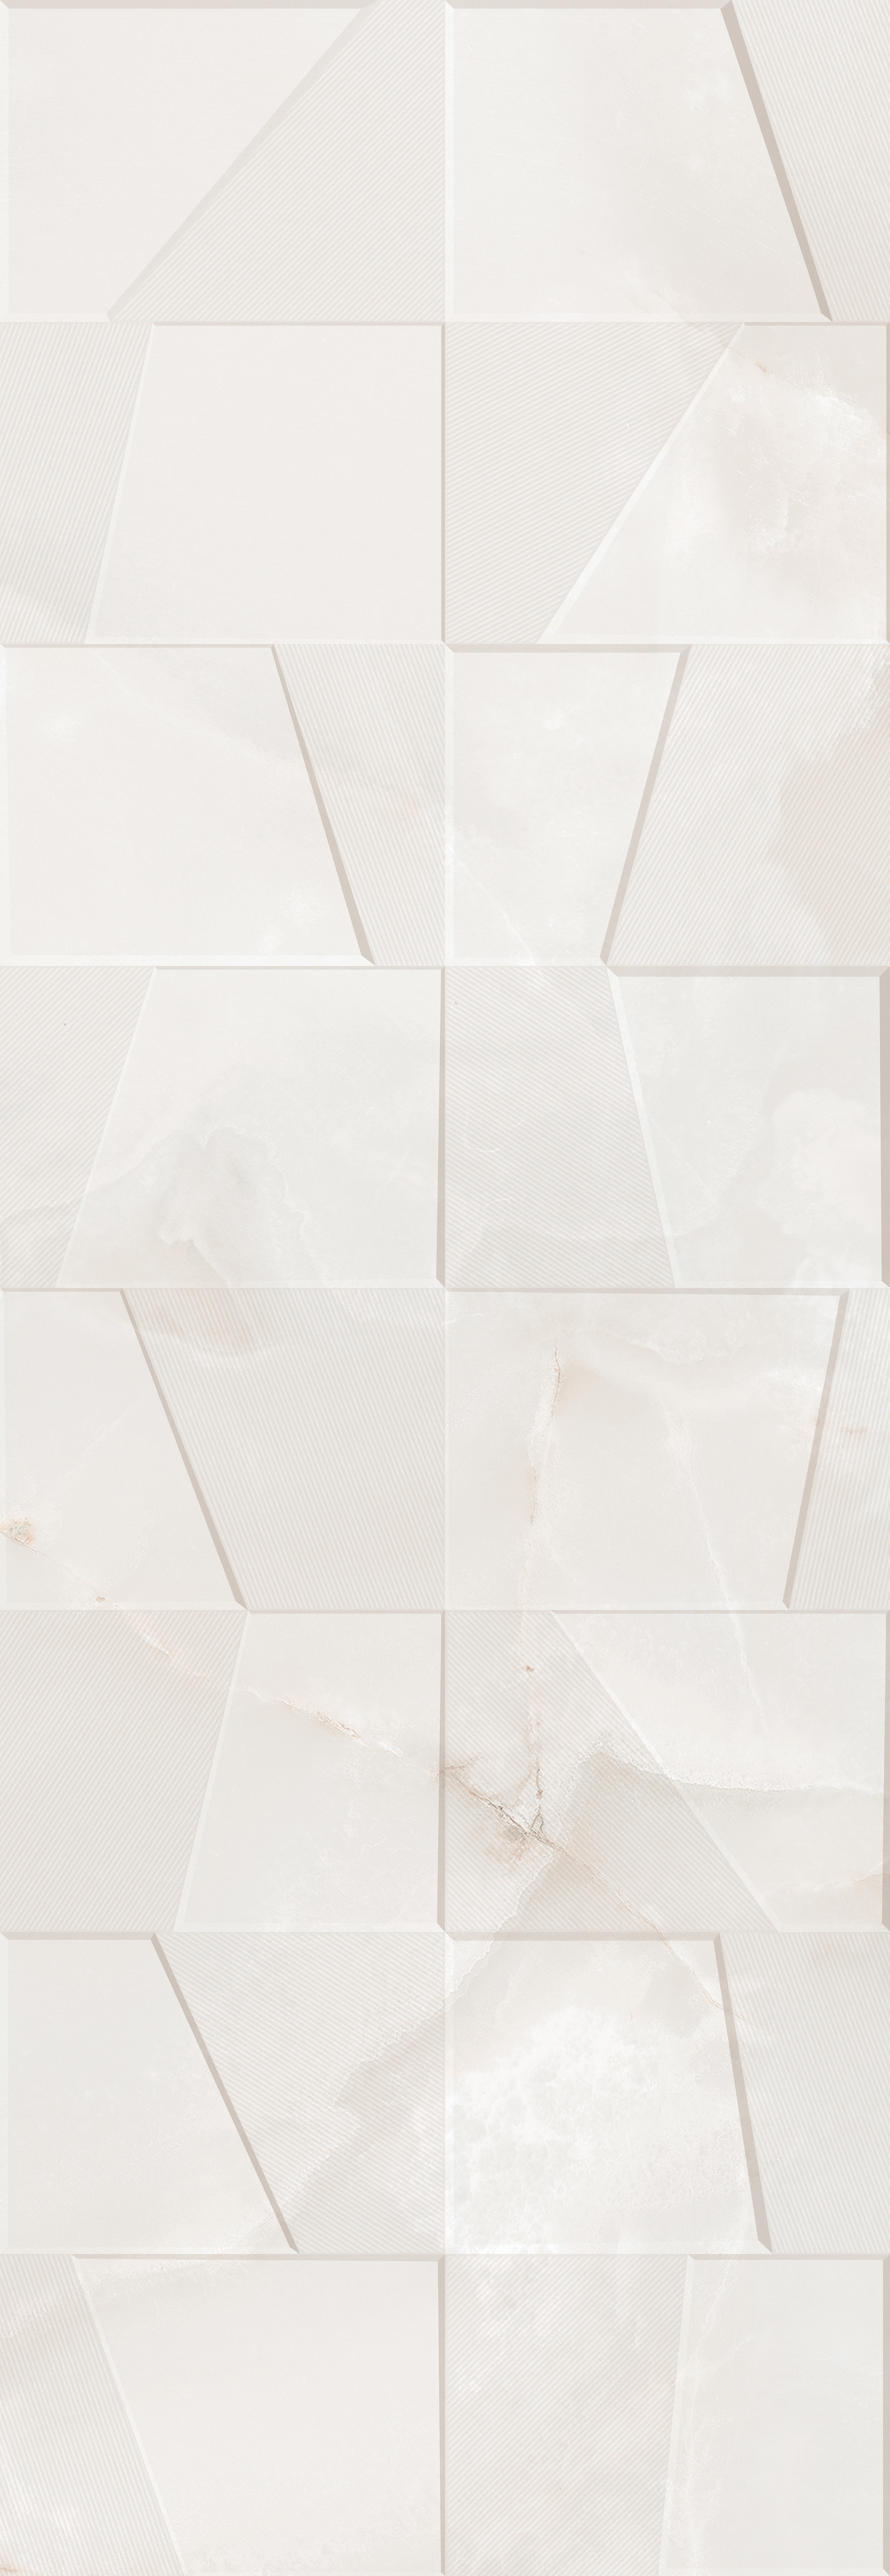 91090629 Керамическая плитка Onix blanco Rel 24.2x70см 1.02 м² цвет белый STLM-0478861 КЕРЛАЙФ